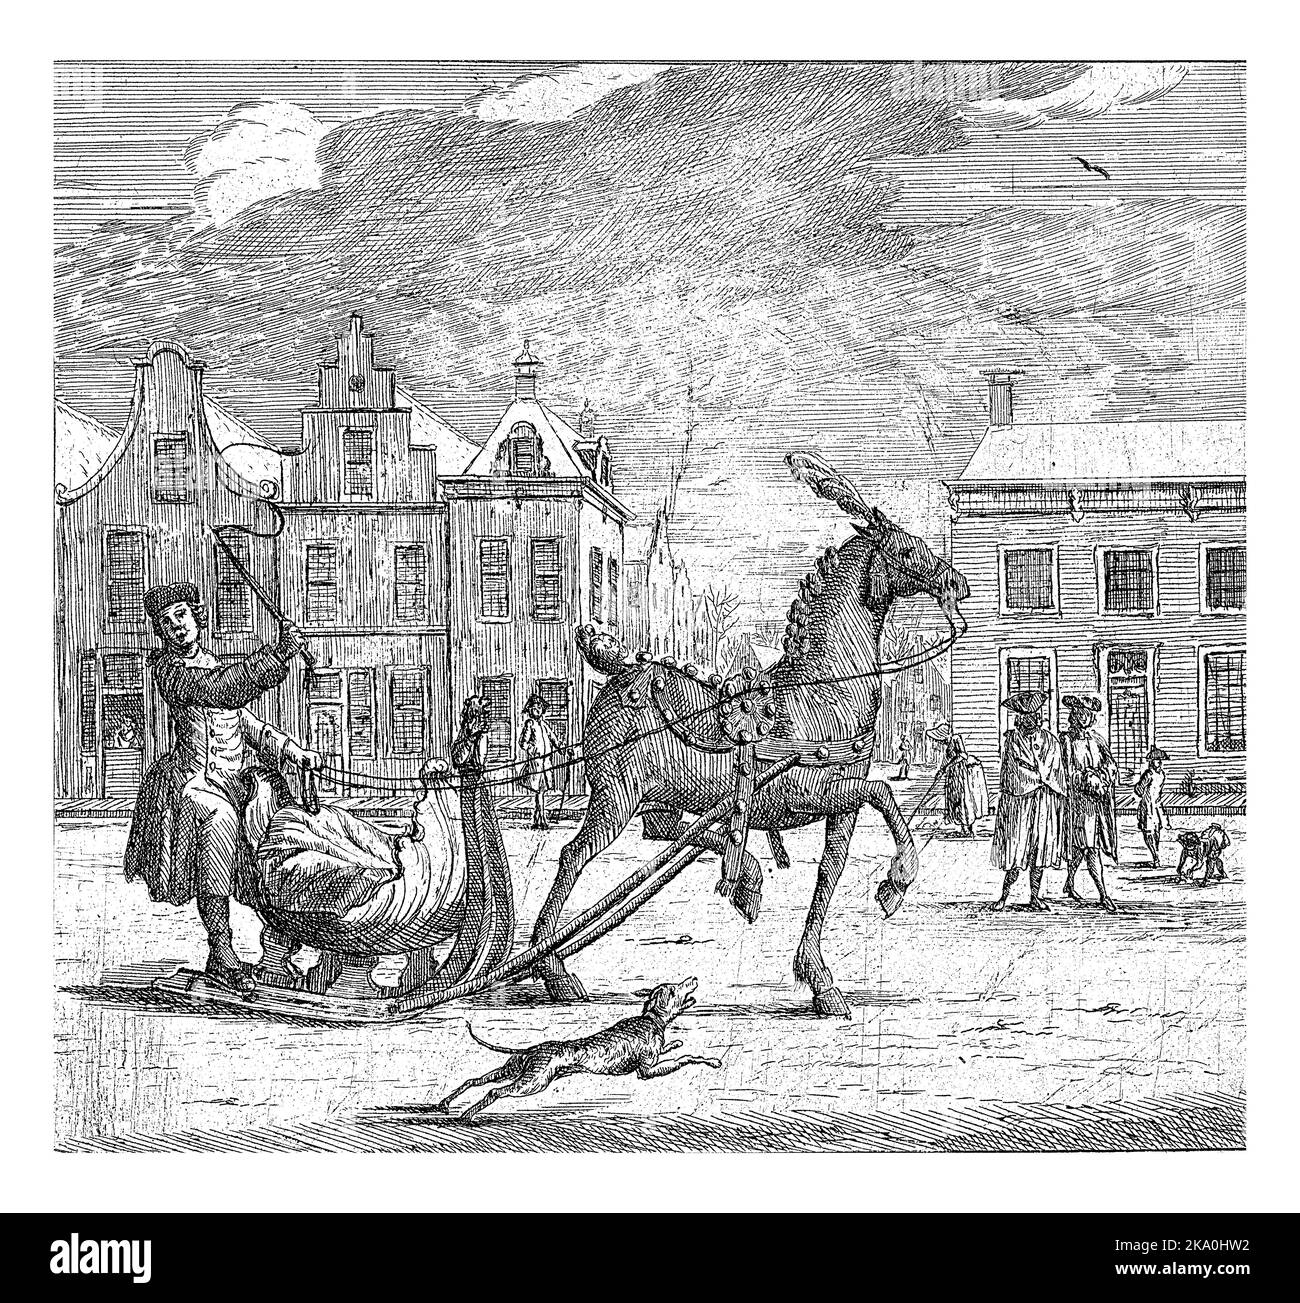 Stadtbild mit Pferdeschlitten. Ein Mann mit einer Peitsche steht auf dem Schlitten. Im Vordergrund ein Hund. Stockfoto